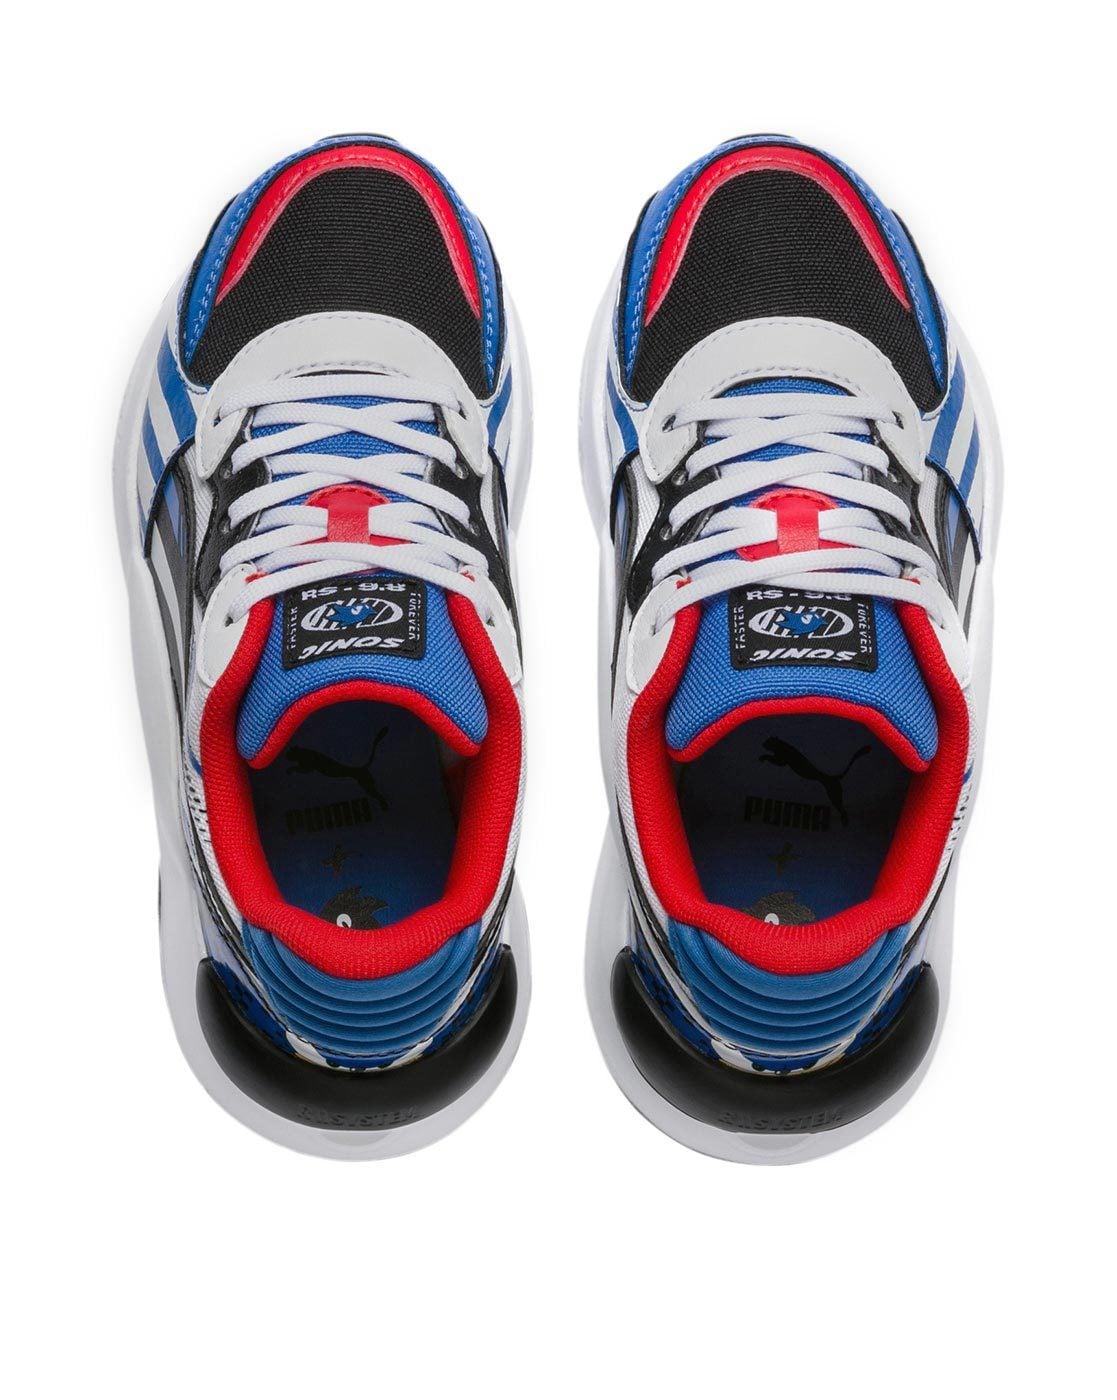 [新しいコレクション] sega running shoes under 500 338692-Sega running shoes ...